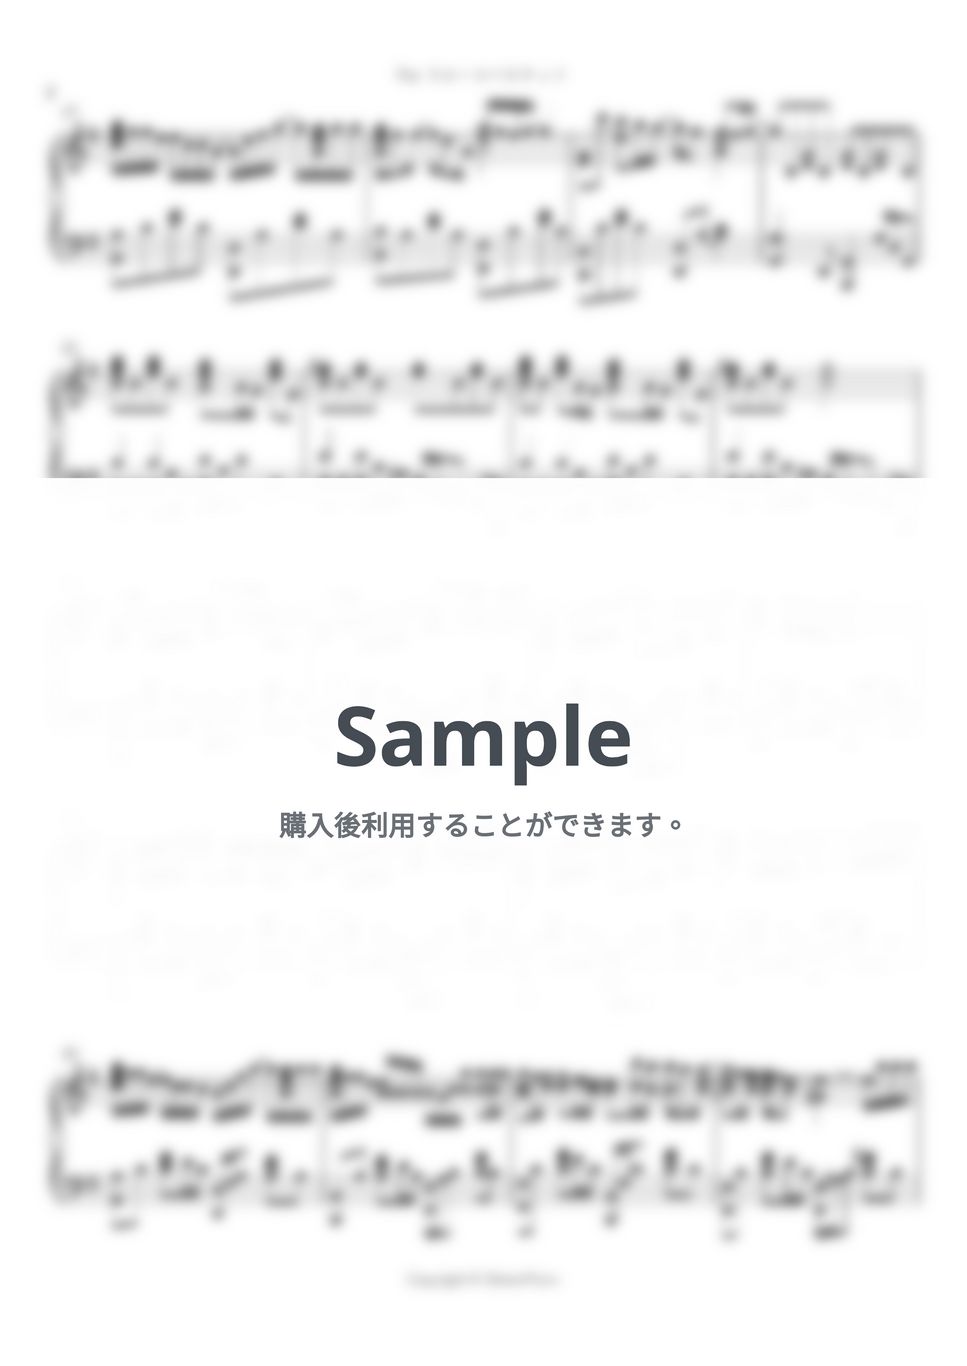 フルーツバスケット - For フルーツバスケット by シビウォルピアノ